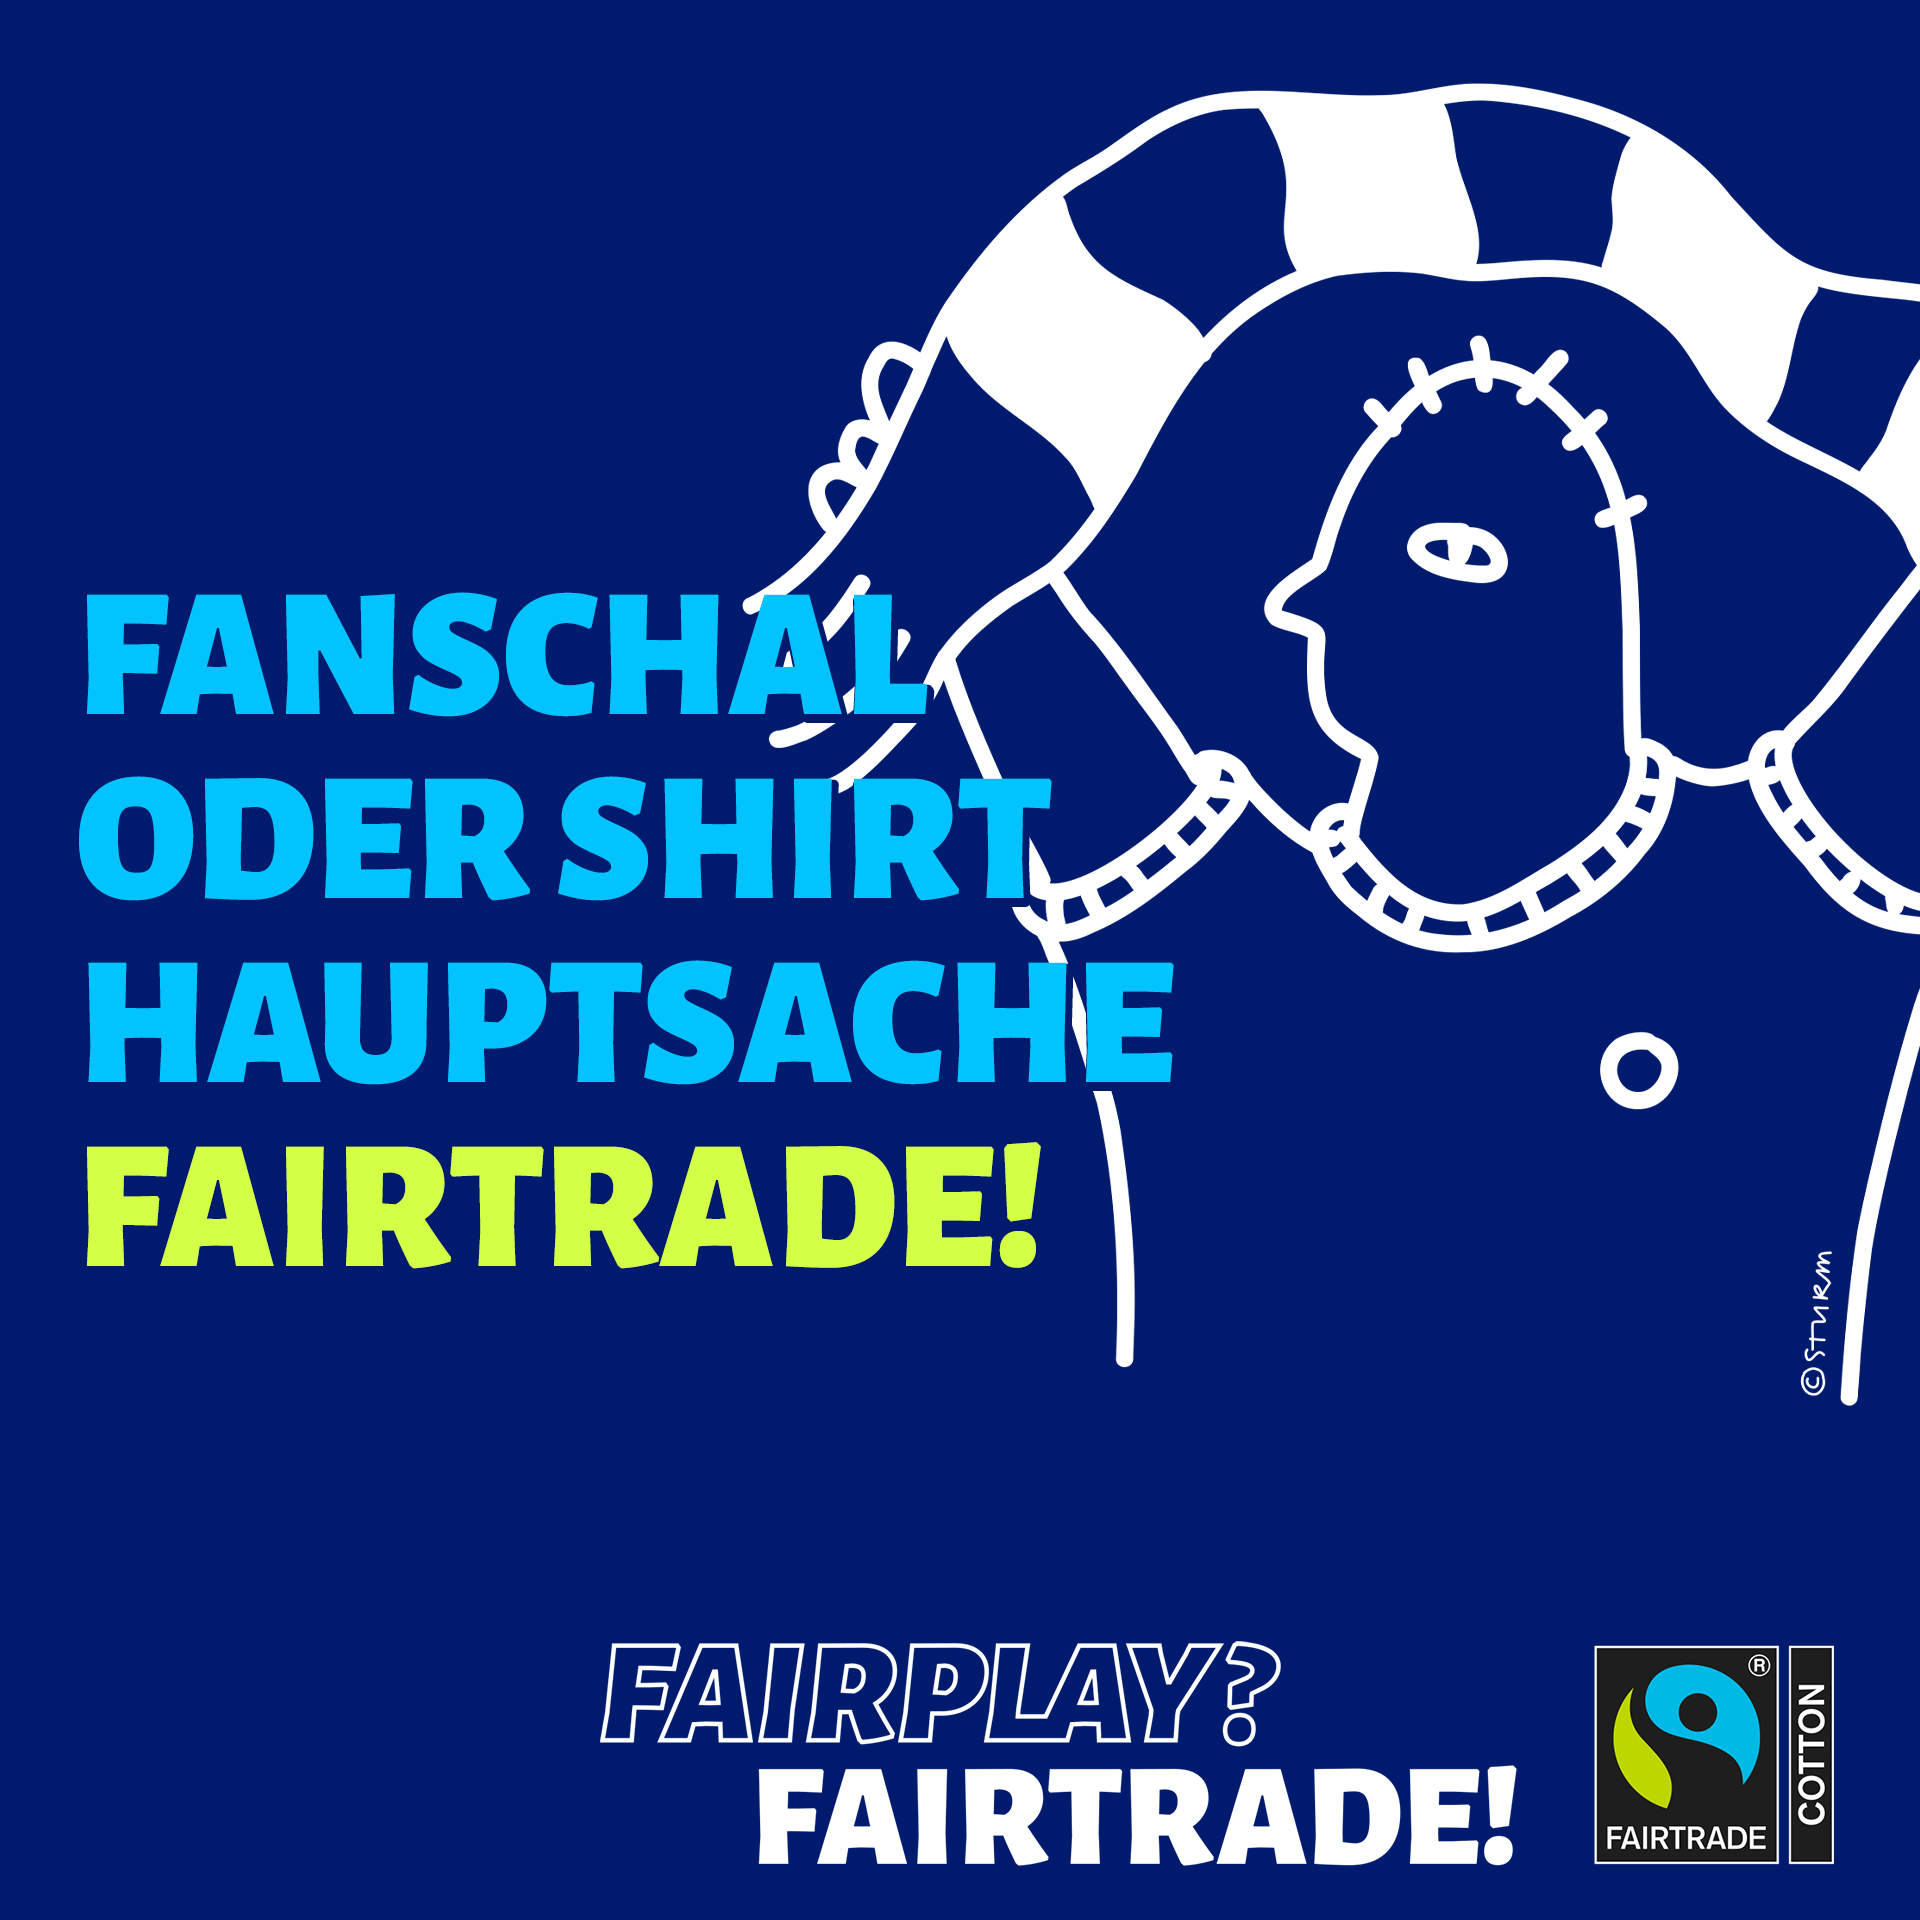 Bild von Fairtrade Deutschland - Ob Fanschal oder Shirt - Hauptsache Fairtrade!